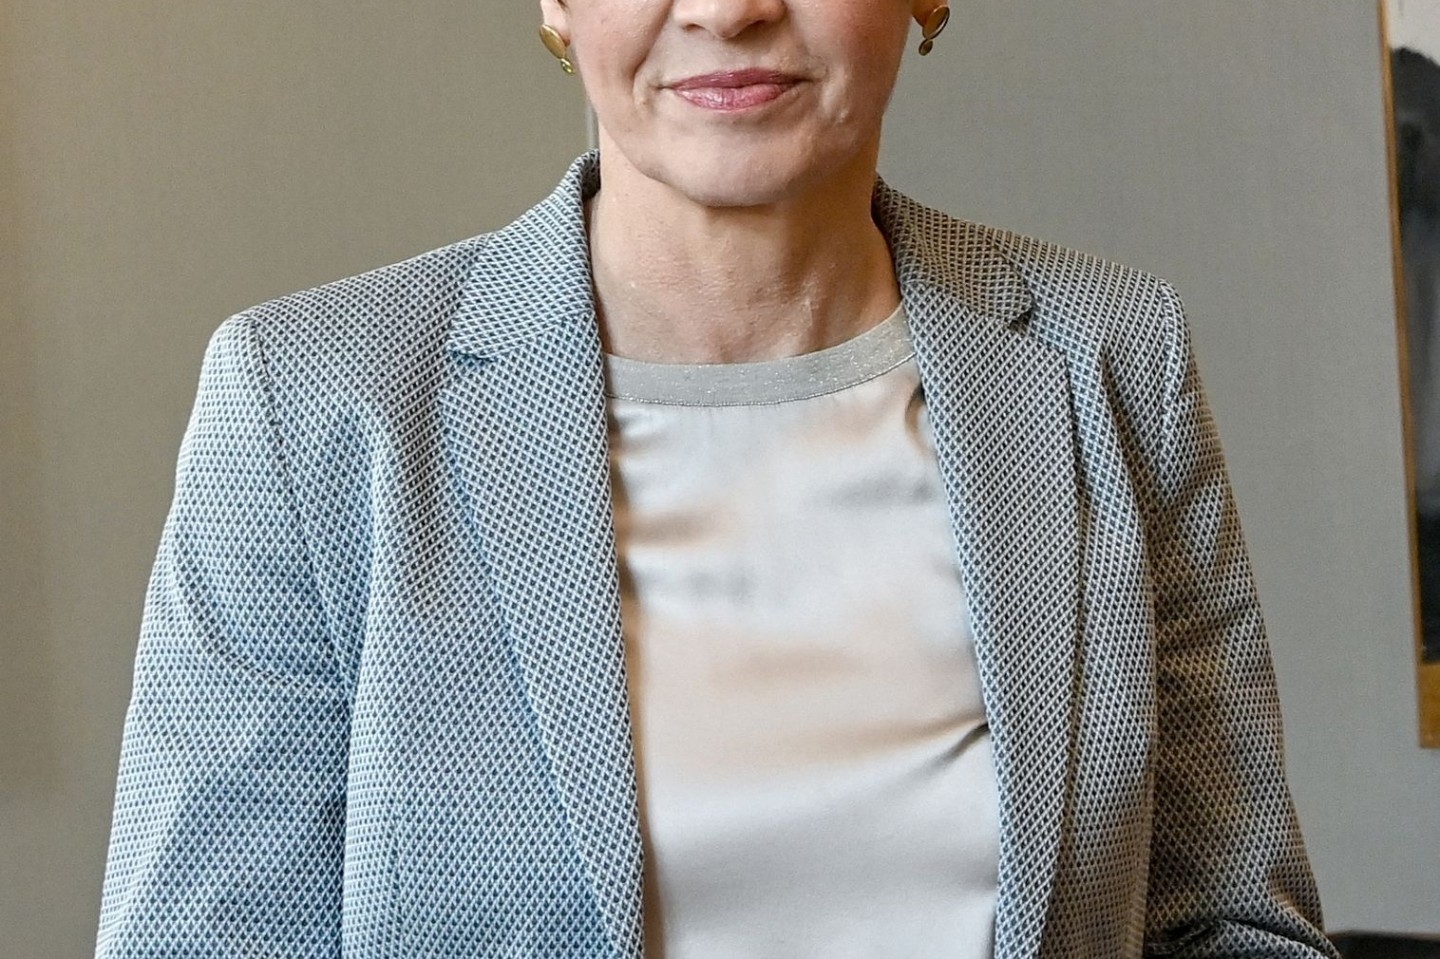 Die Juristin Elke Büdenbender, Frau des Bundespräsidenten, wird wieder als Richterin arbeiten.